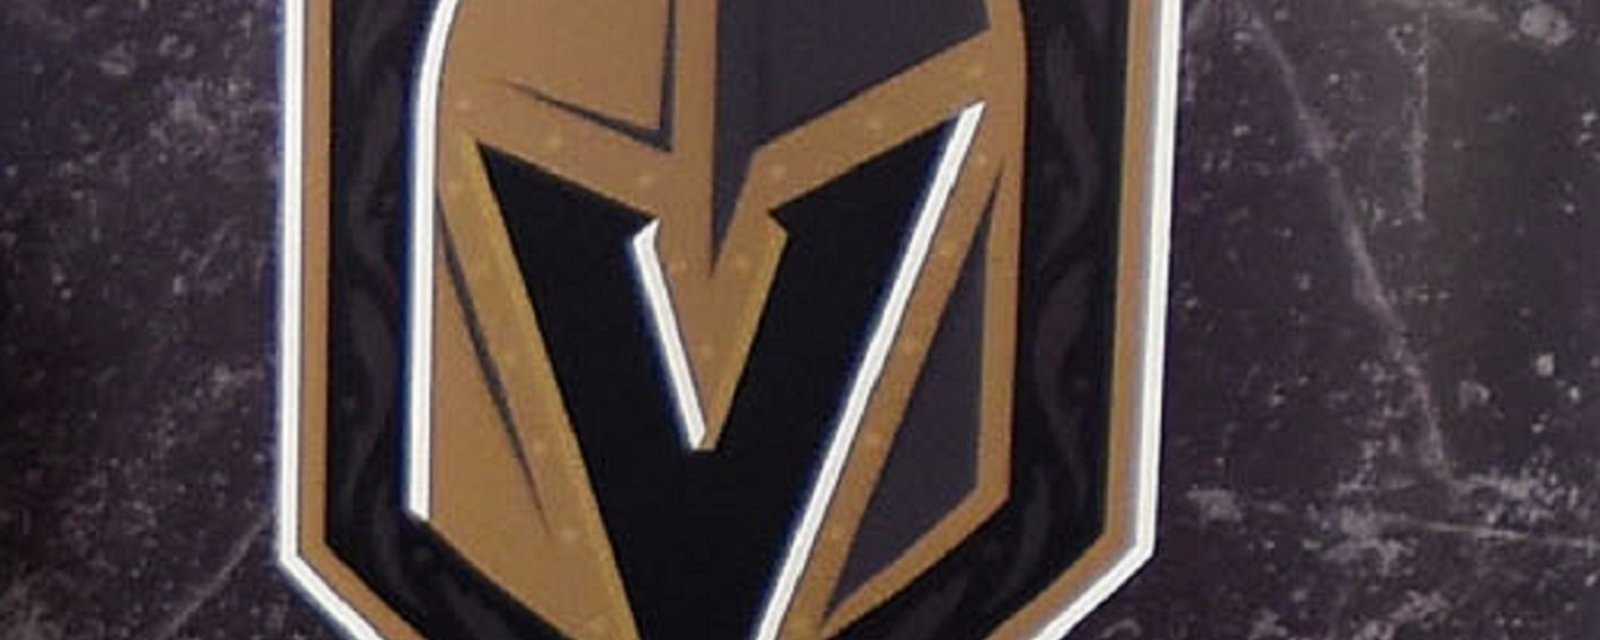 Un petit problème avec le logo des Golden Knights?